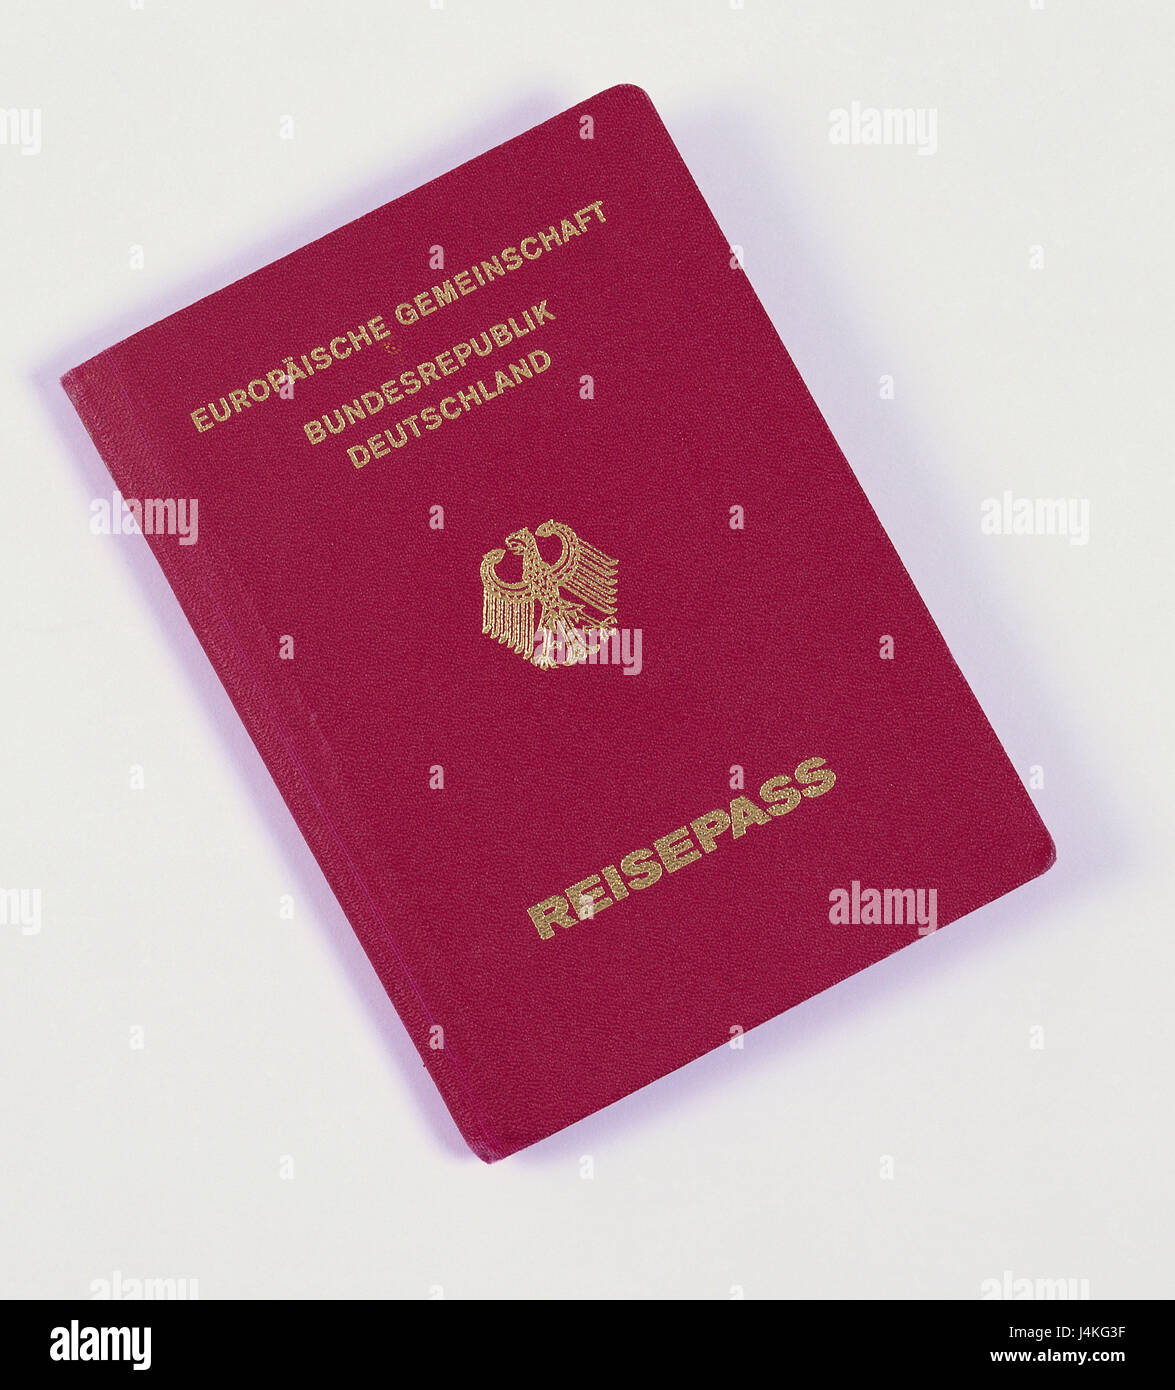 Pasaporte o tarjeta de identidad